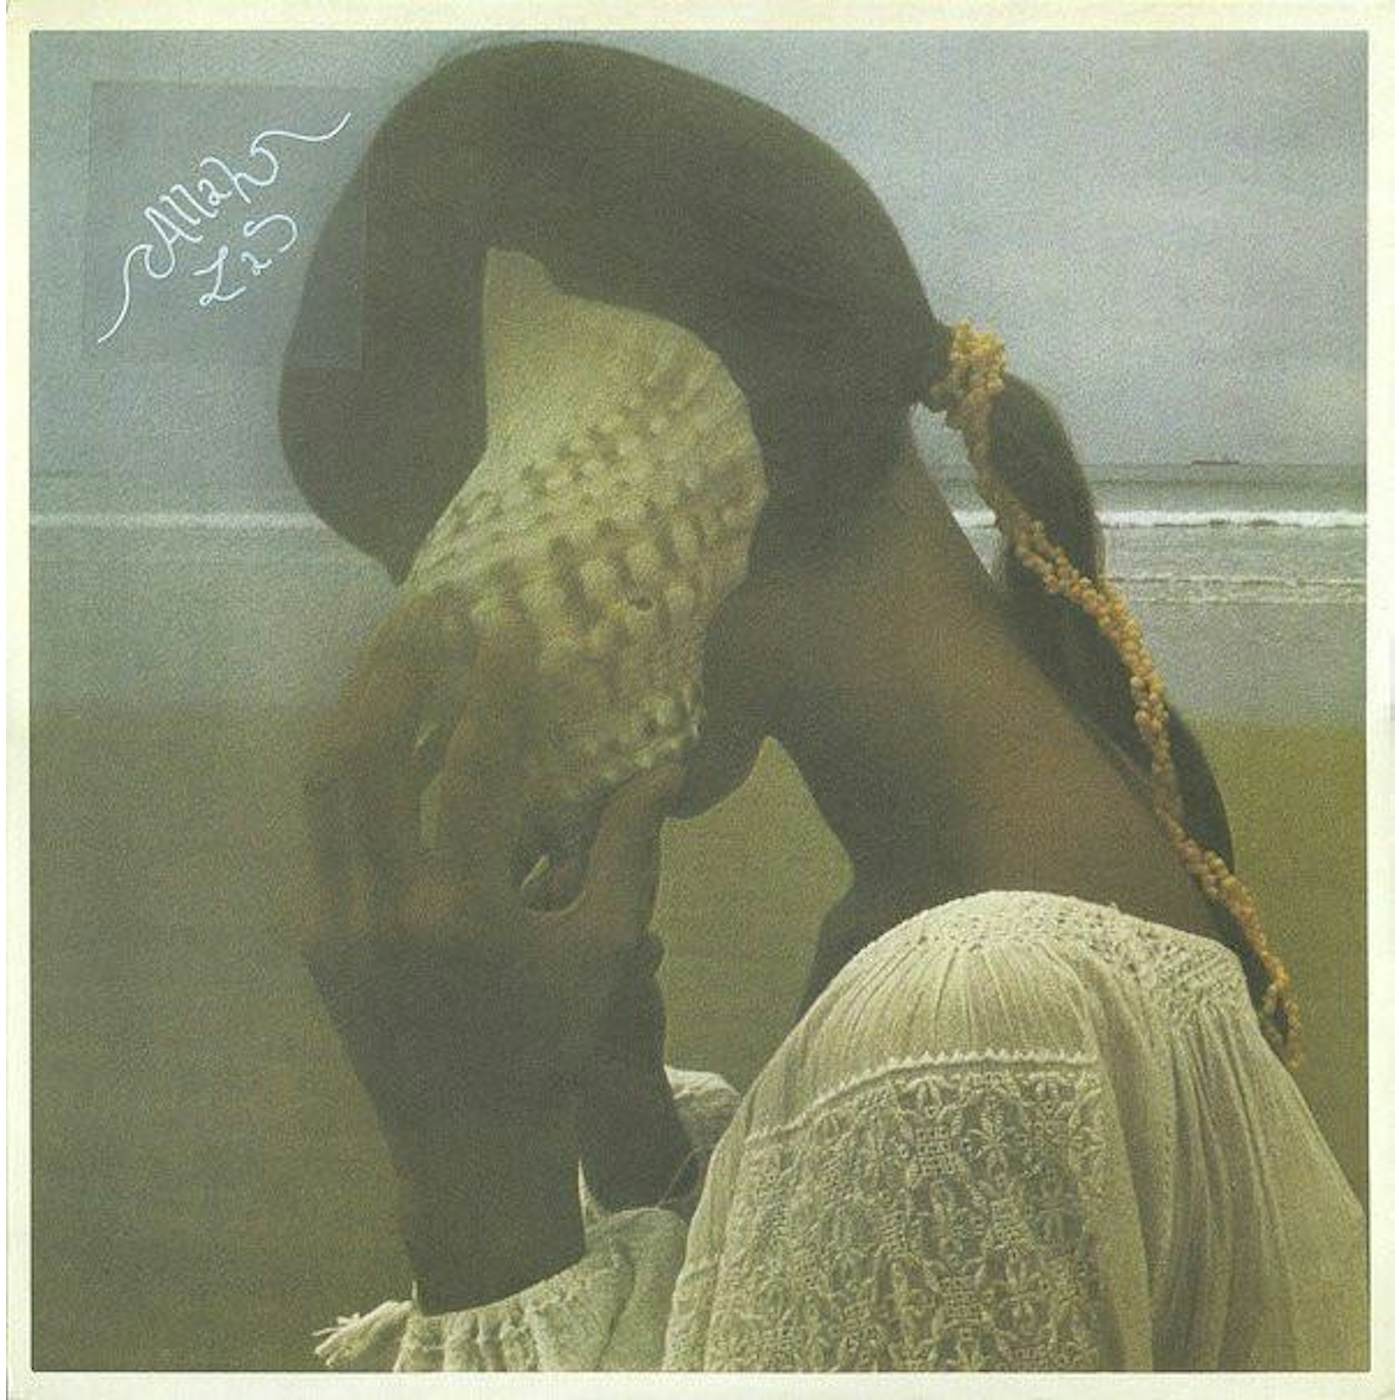 Allah-Las Vinyl Record